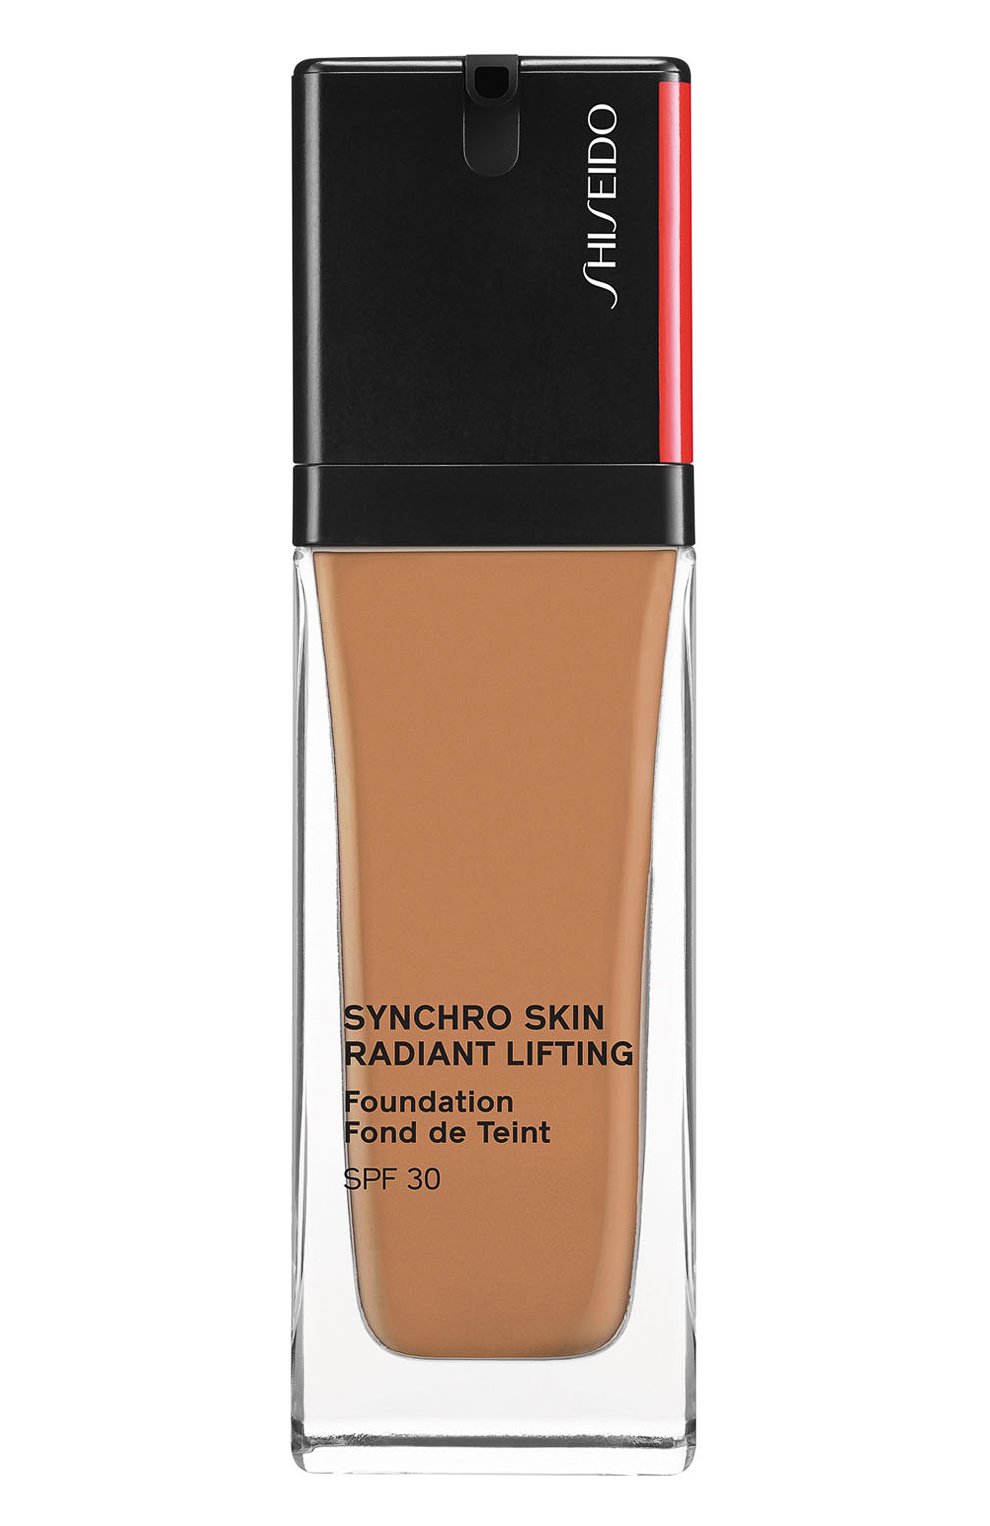 Шисейдо тональный крем с эффектом сияния. Shiseido. Radiant Lifting Foundation тон 240. Shiseido Synchro Skin Radiant Lifting Foundation цвета. Палитра Shiseido Synchro Skin Radiant Lifting Foundation SPF 30. Shiseido synchro skin radiant